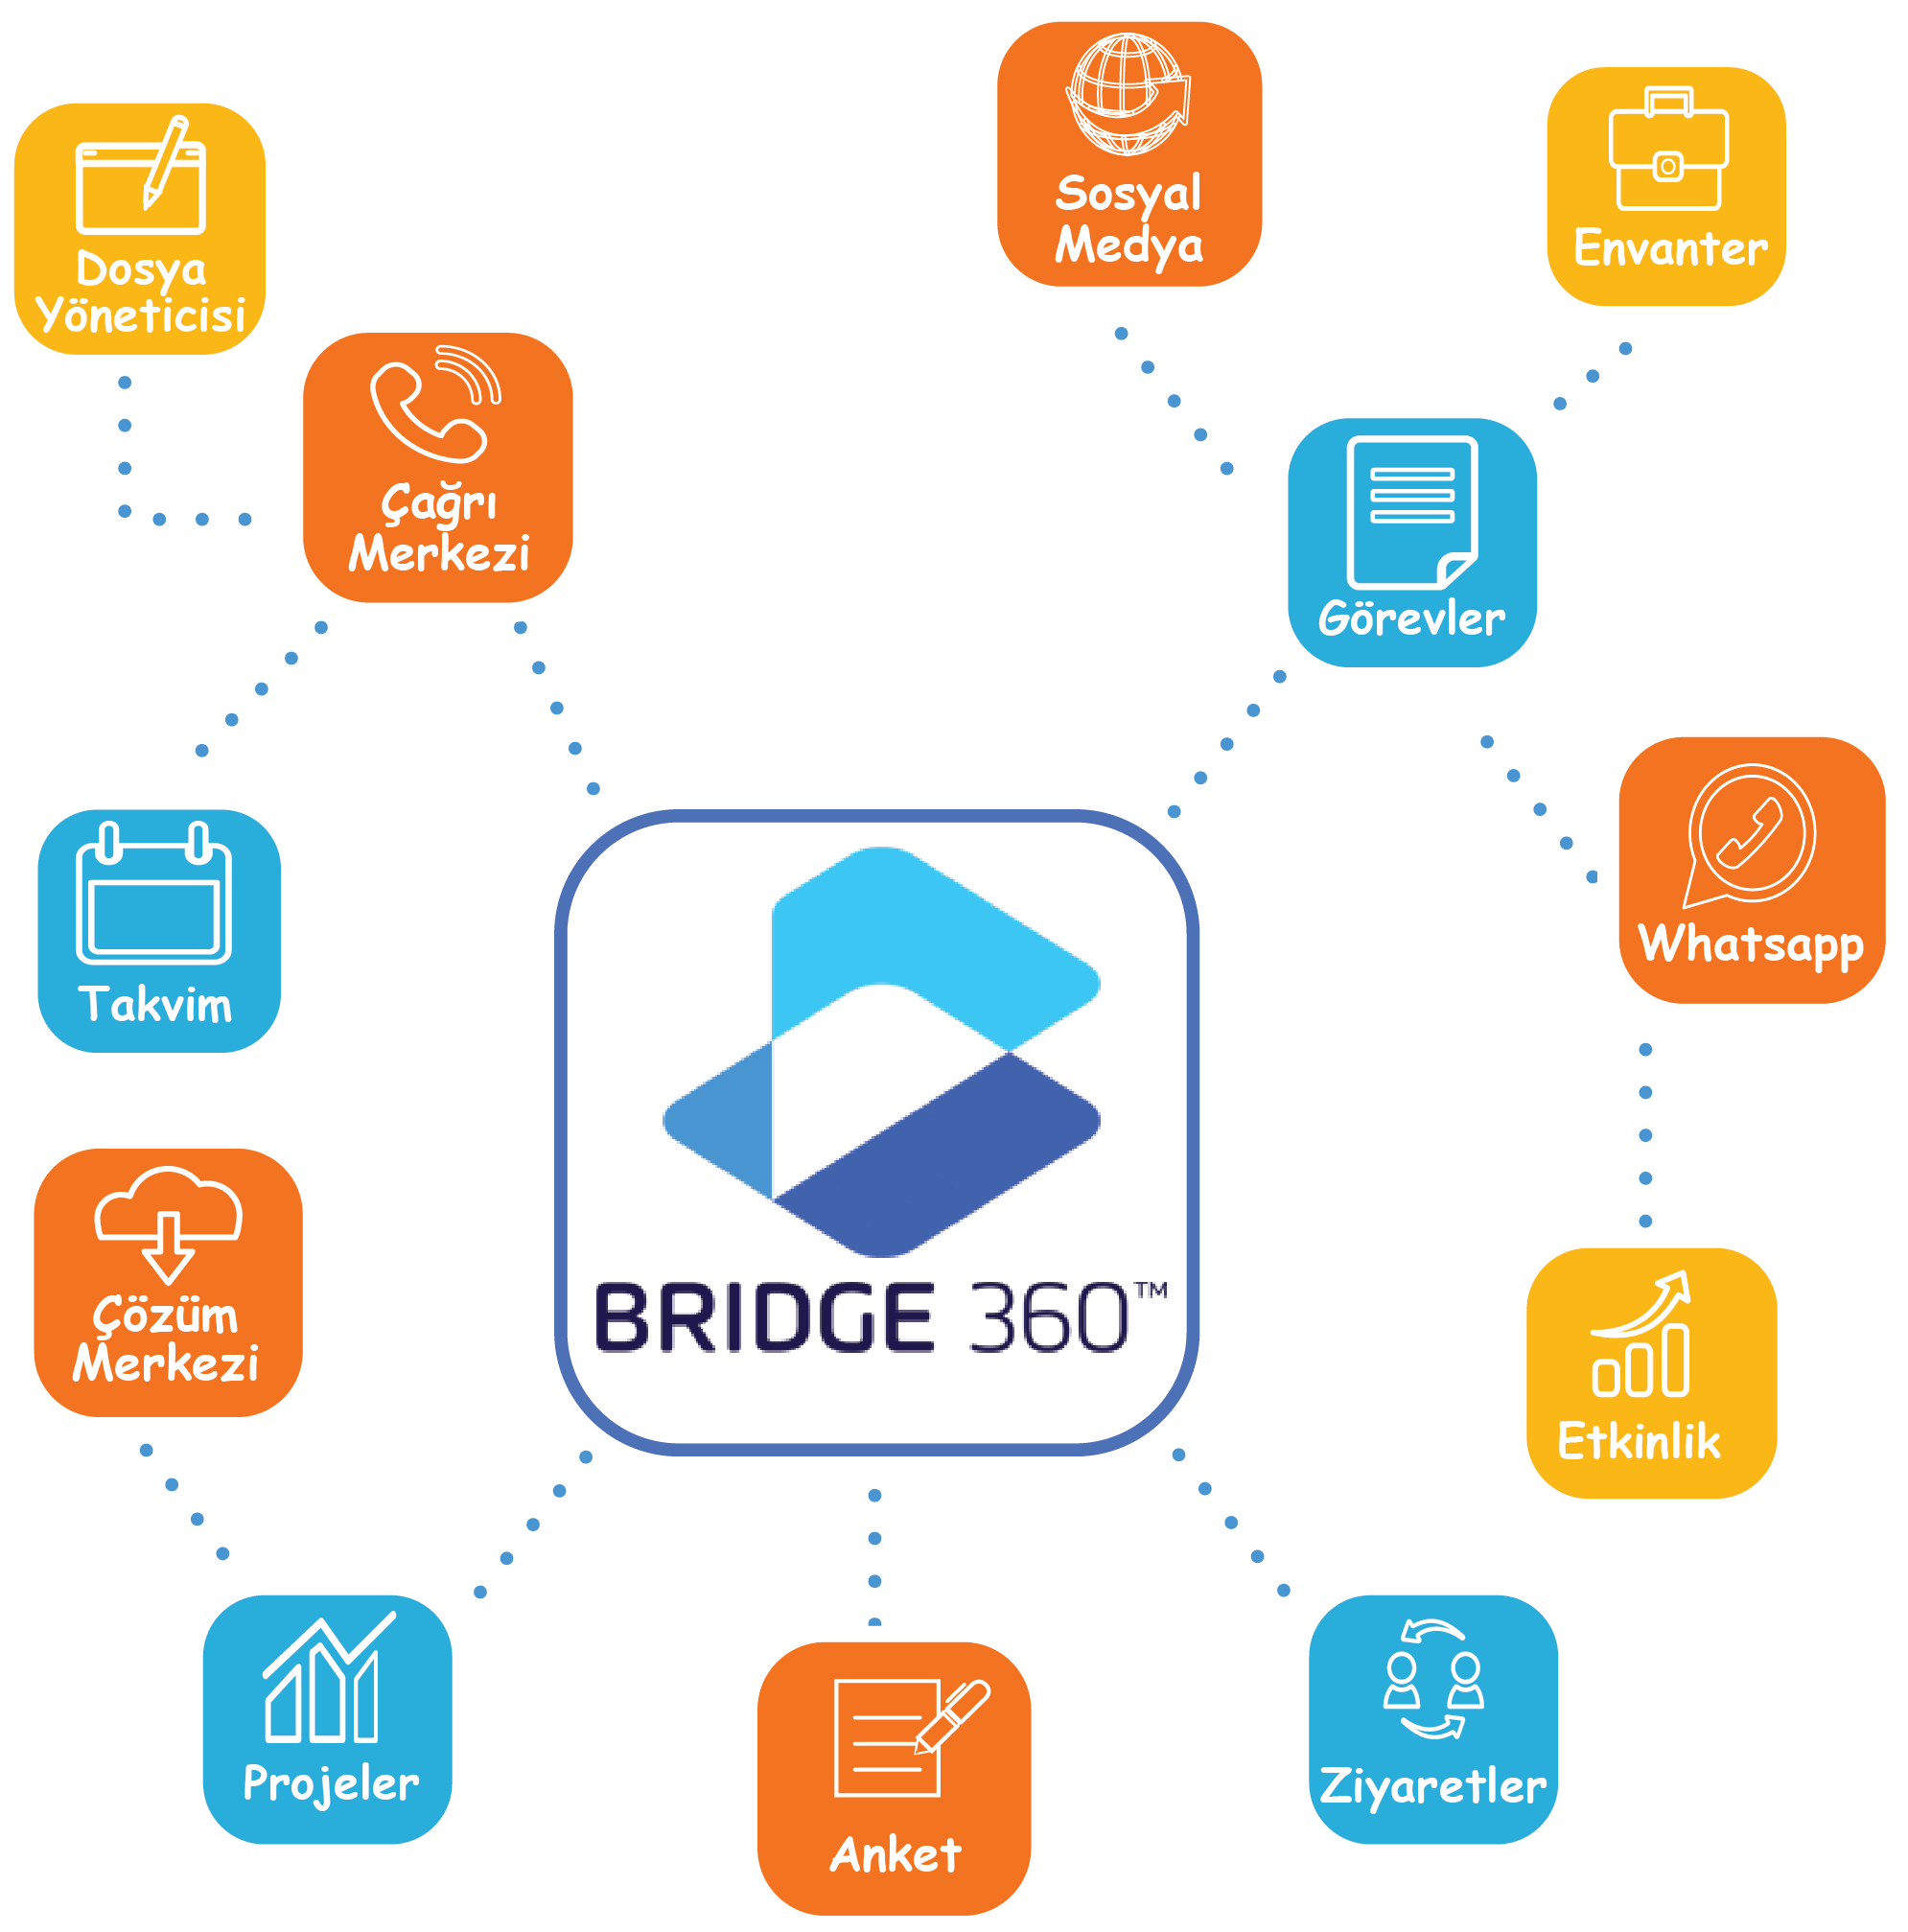 Bridge 360 vatandaş ilişkileri yönetimi